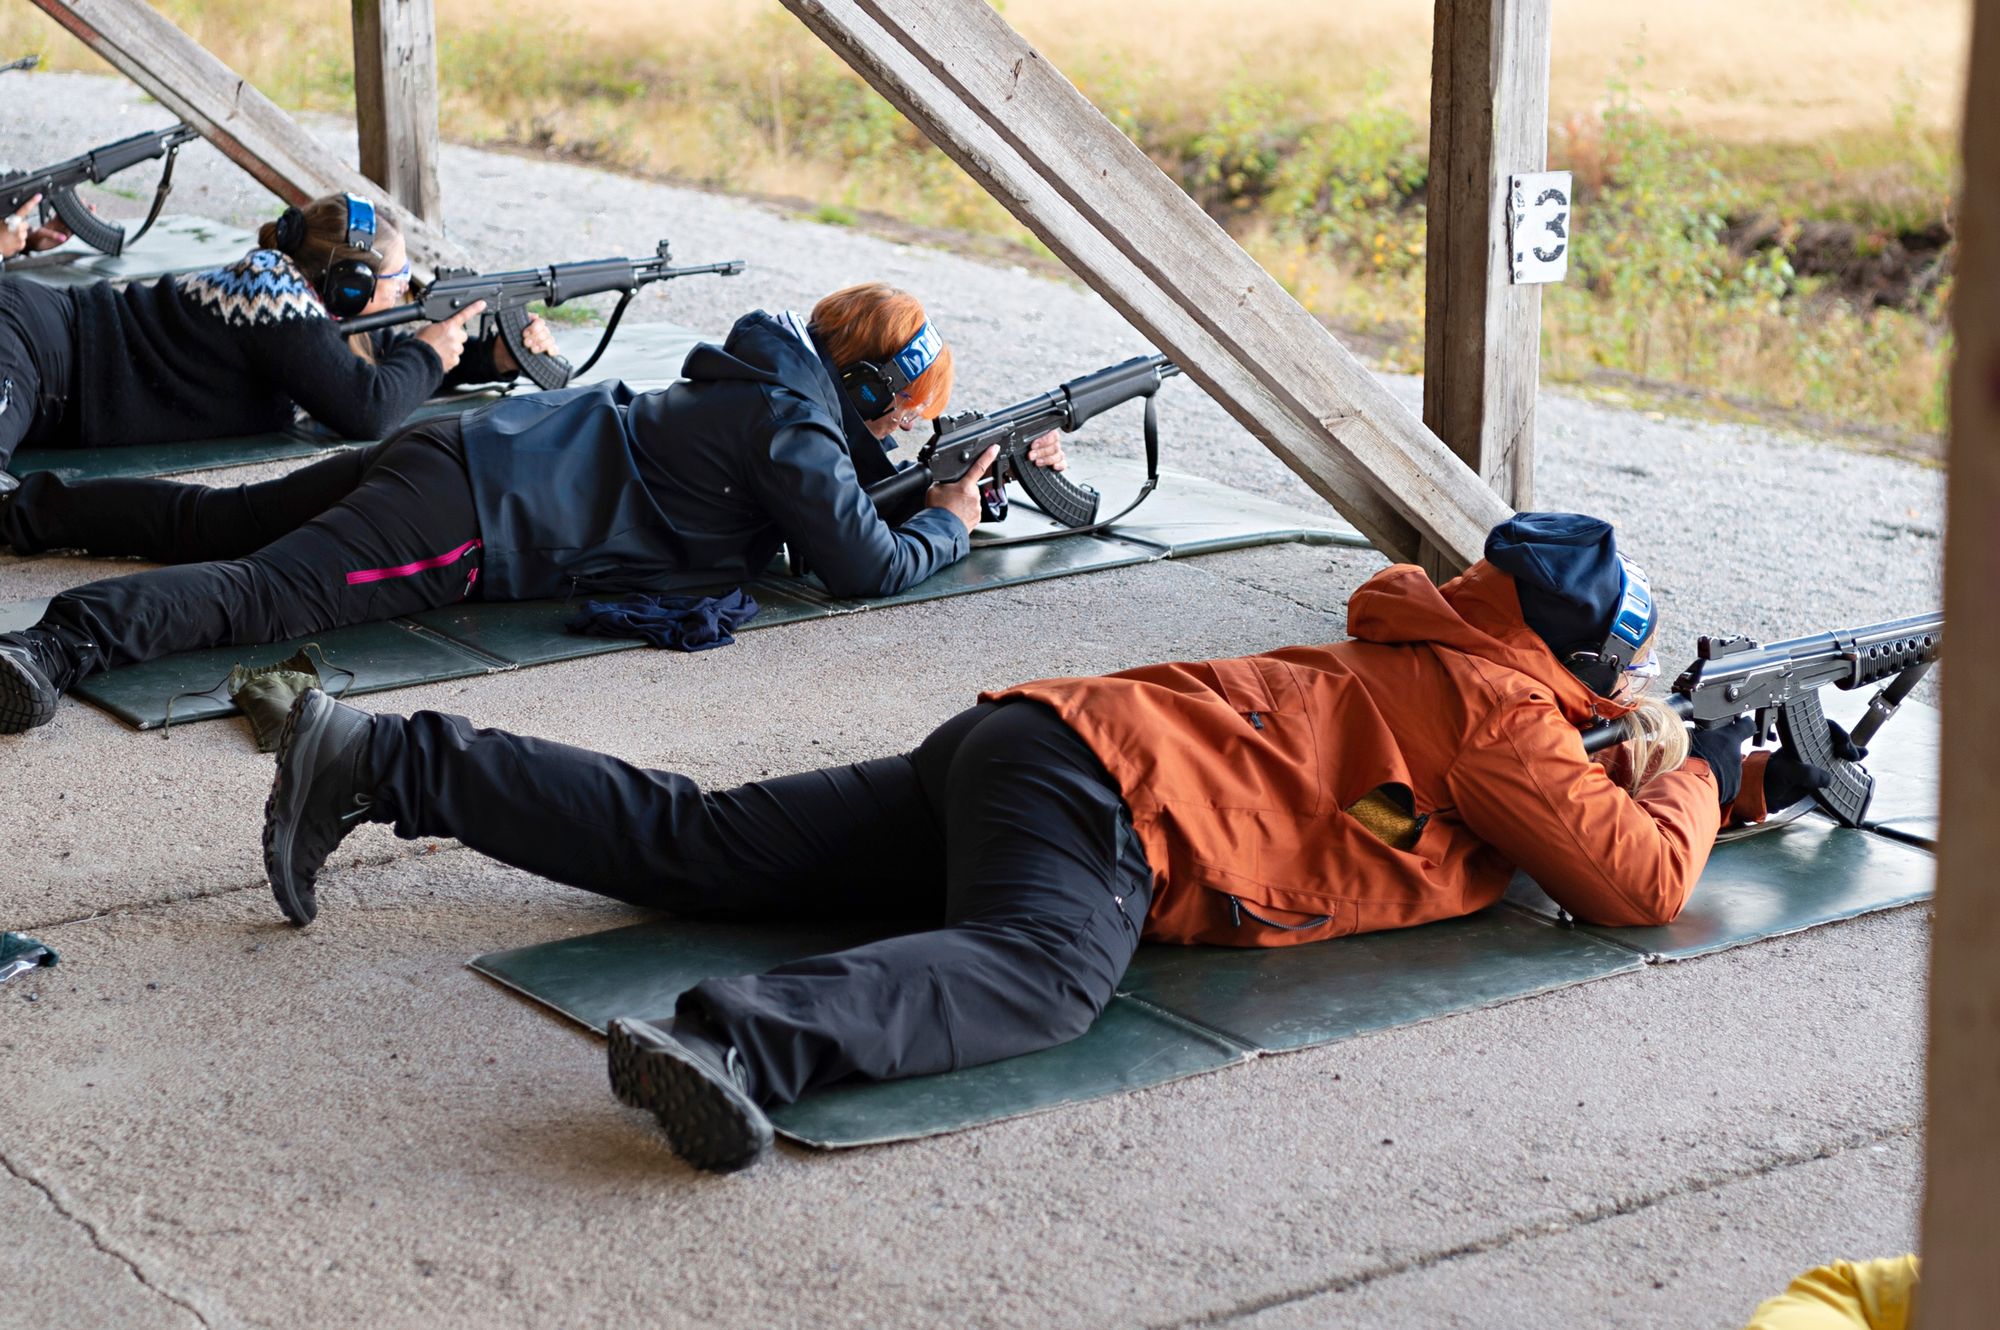 Maanpuolustus: ”Rynnäkkökiväärin käsittelyn ja oikean ampuma-asennon oppii nopeasti”, Minna Kuvaja kertoo. © Veijo Lindgren